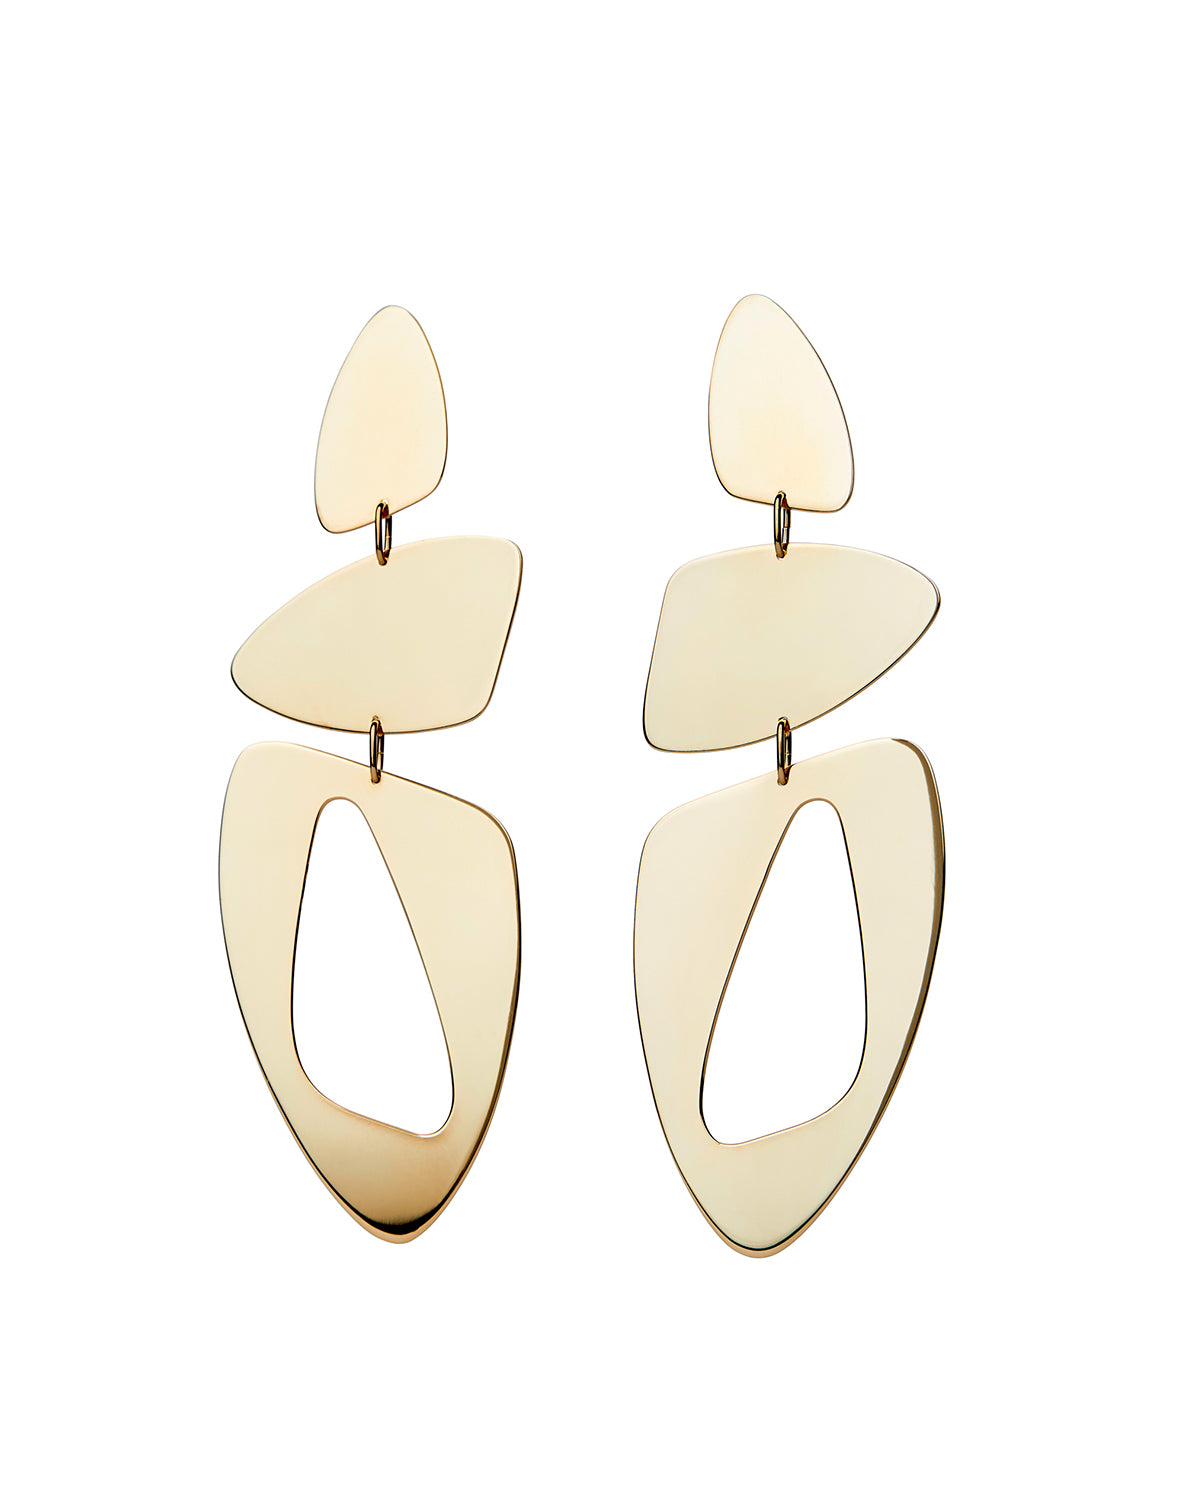 Triple Amorphous earrings